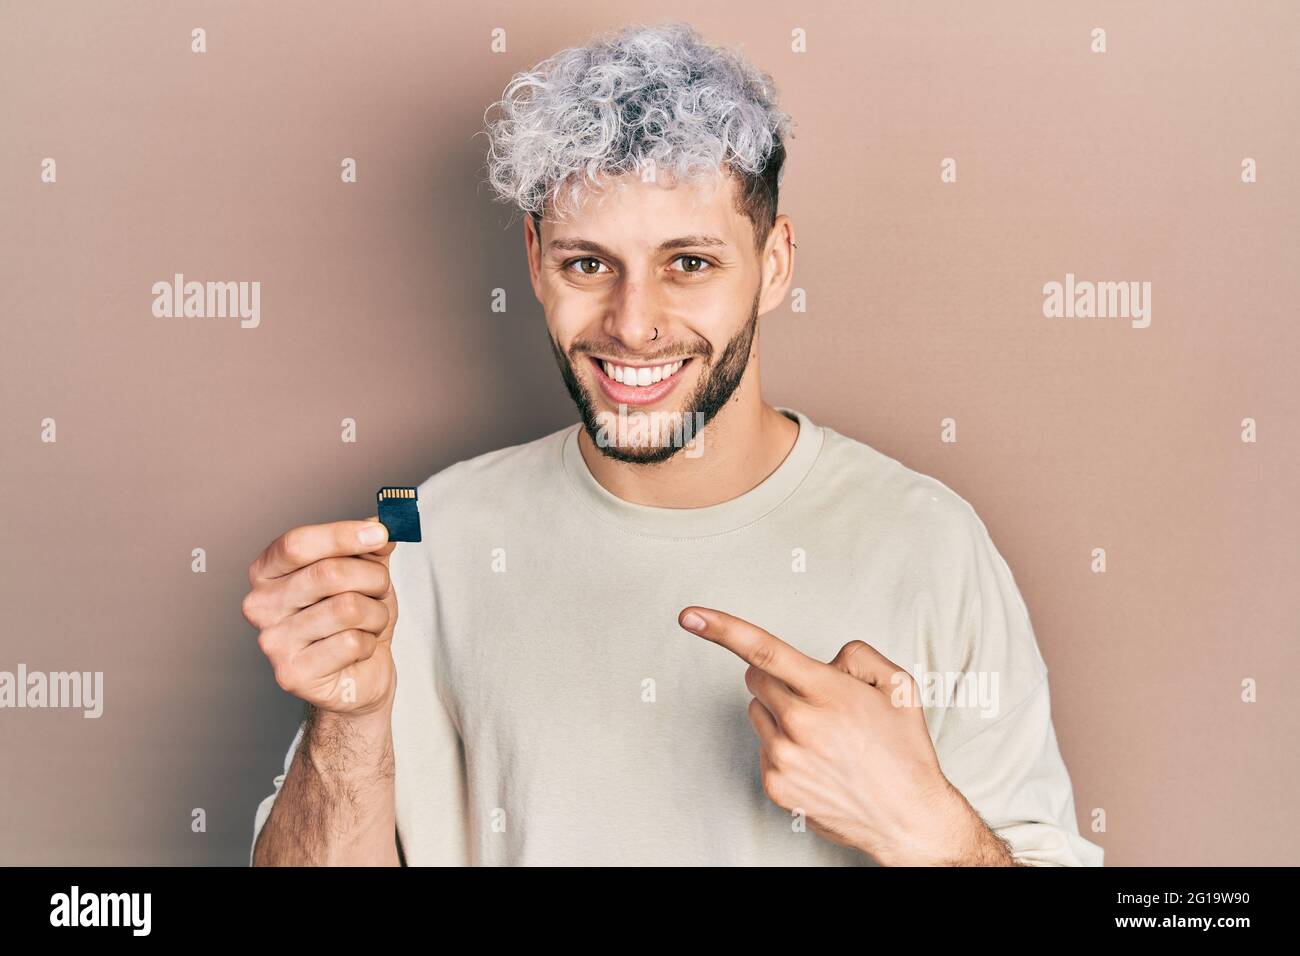 Junger hispanischer Mann mit modernen gefärbten Haaren, die sdxc-Karte halten, lächelt glücklich und zeigt mit Hand und Finger Stockfoto